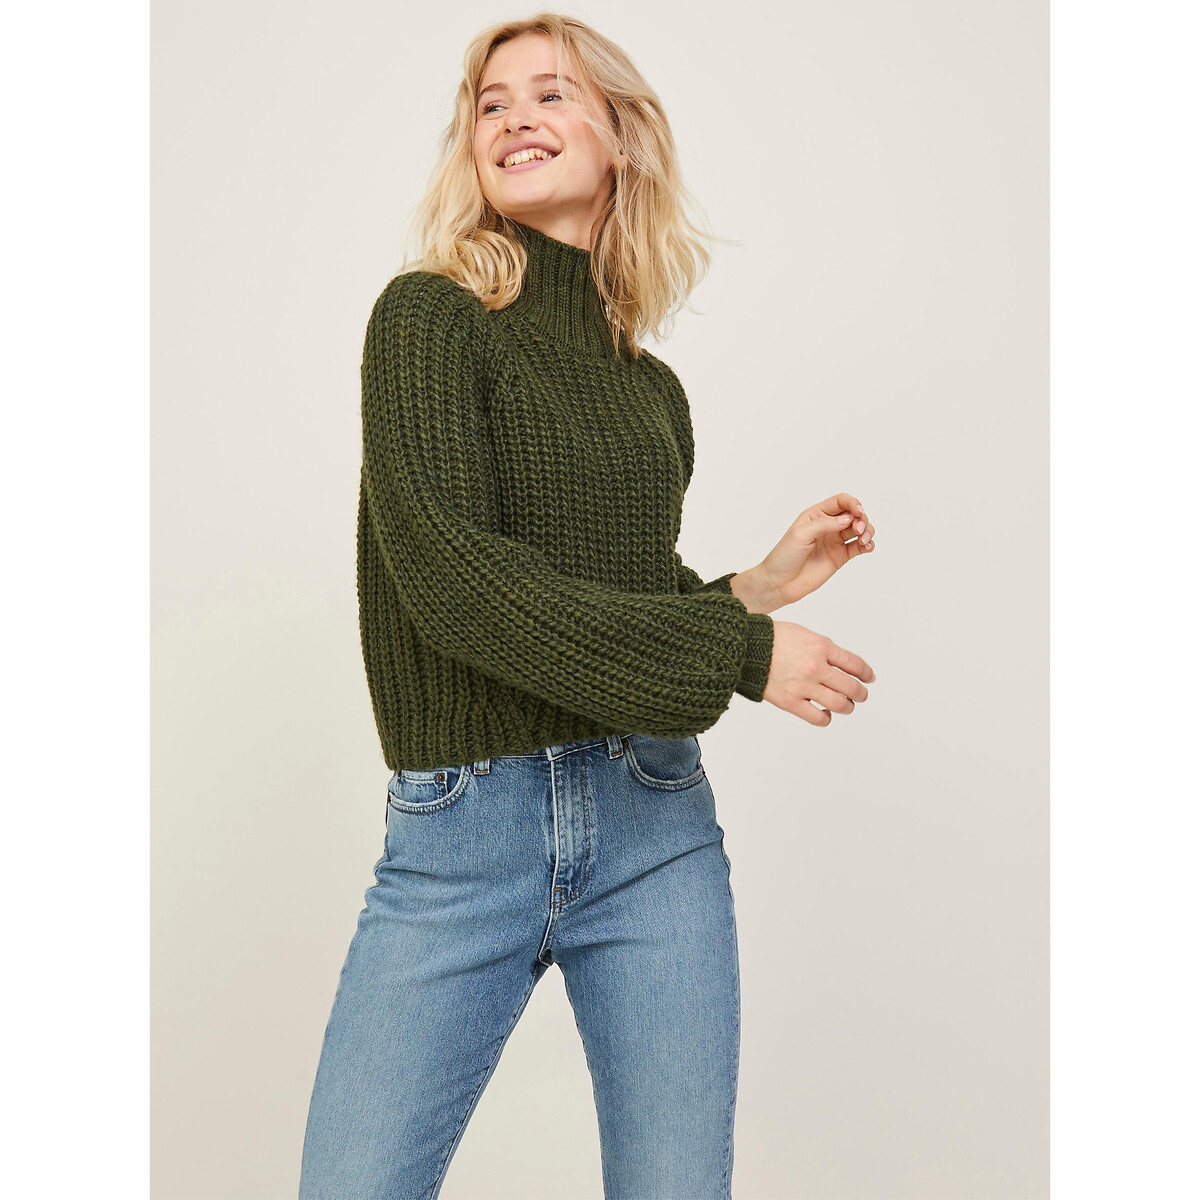 Пуловер С воротником-стойкой из объемного трикотажа XS зеленый